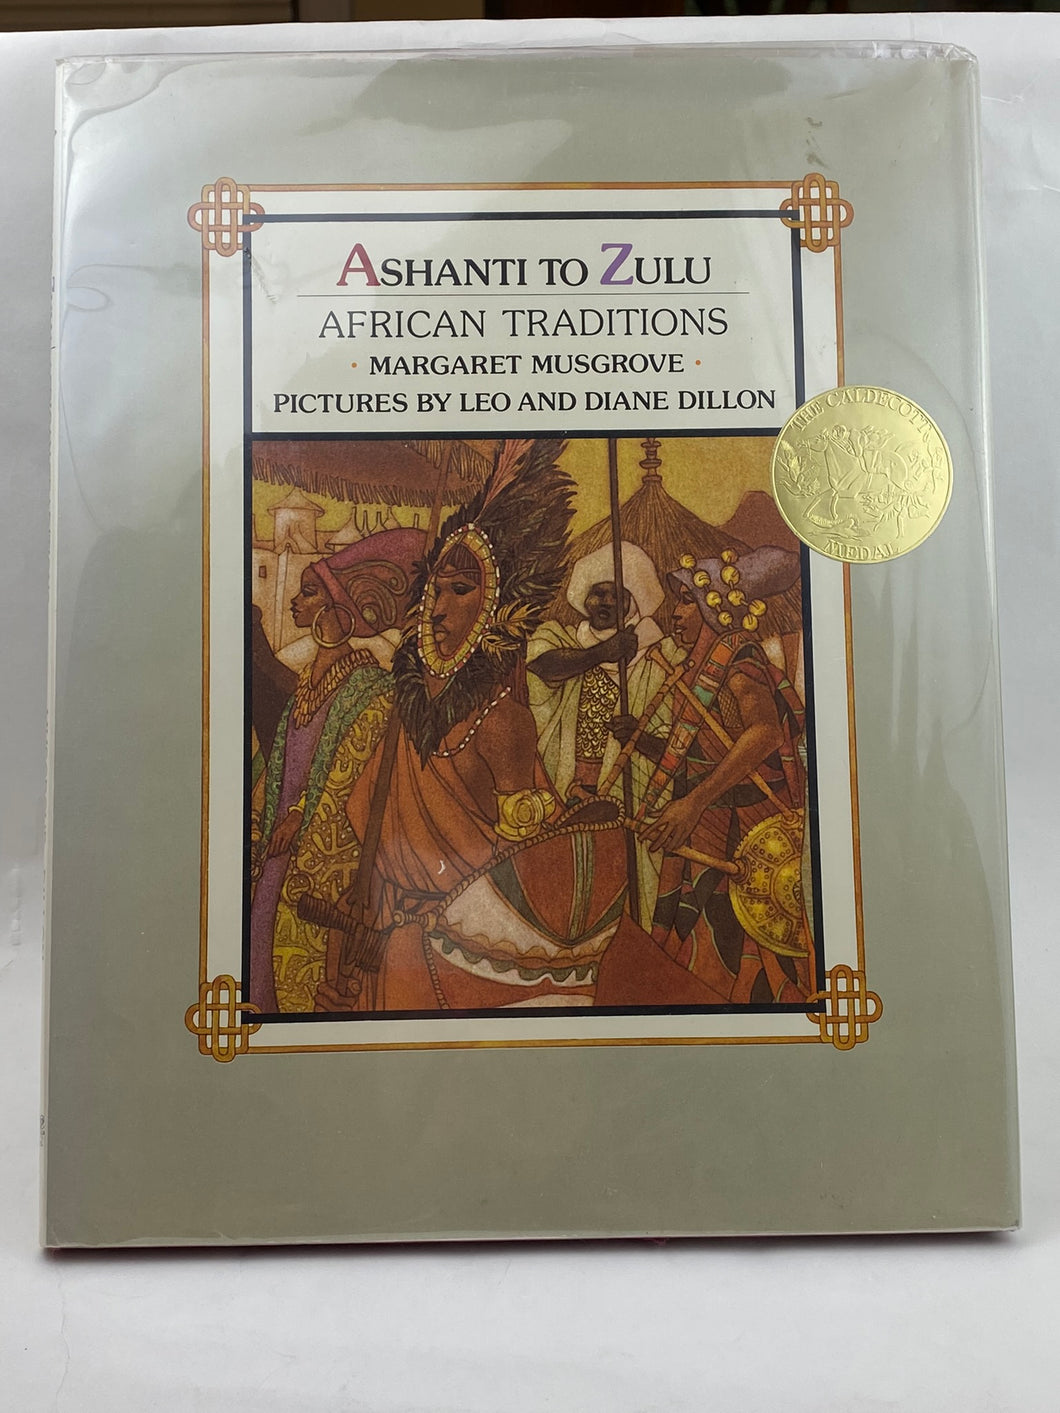 Ashanti to Zulu: African Traditions 1976 ISBN: 0803703570 Musgrove